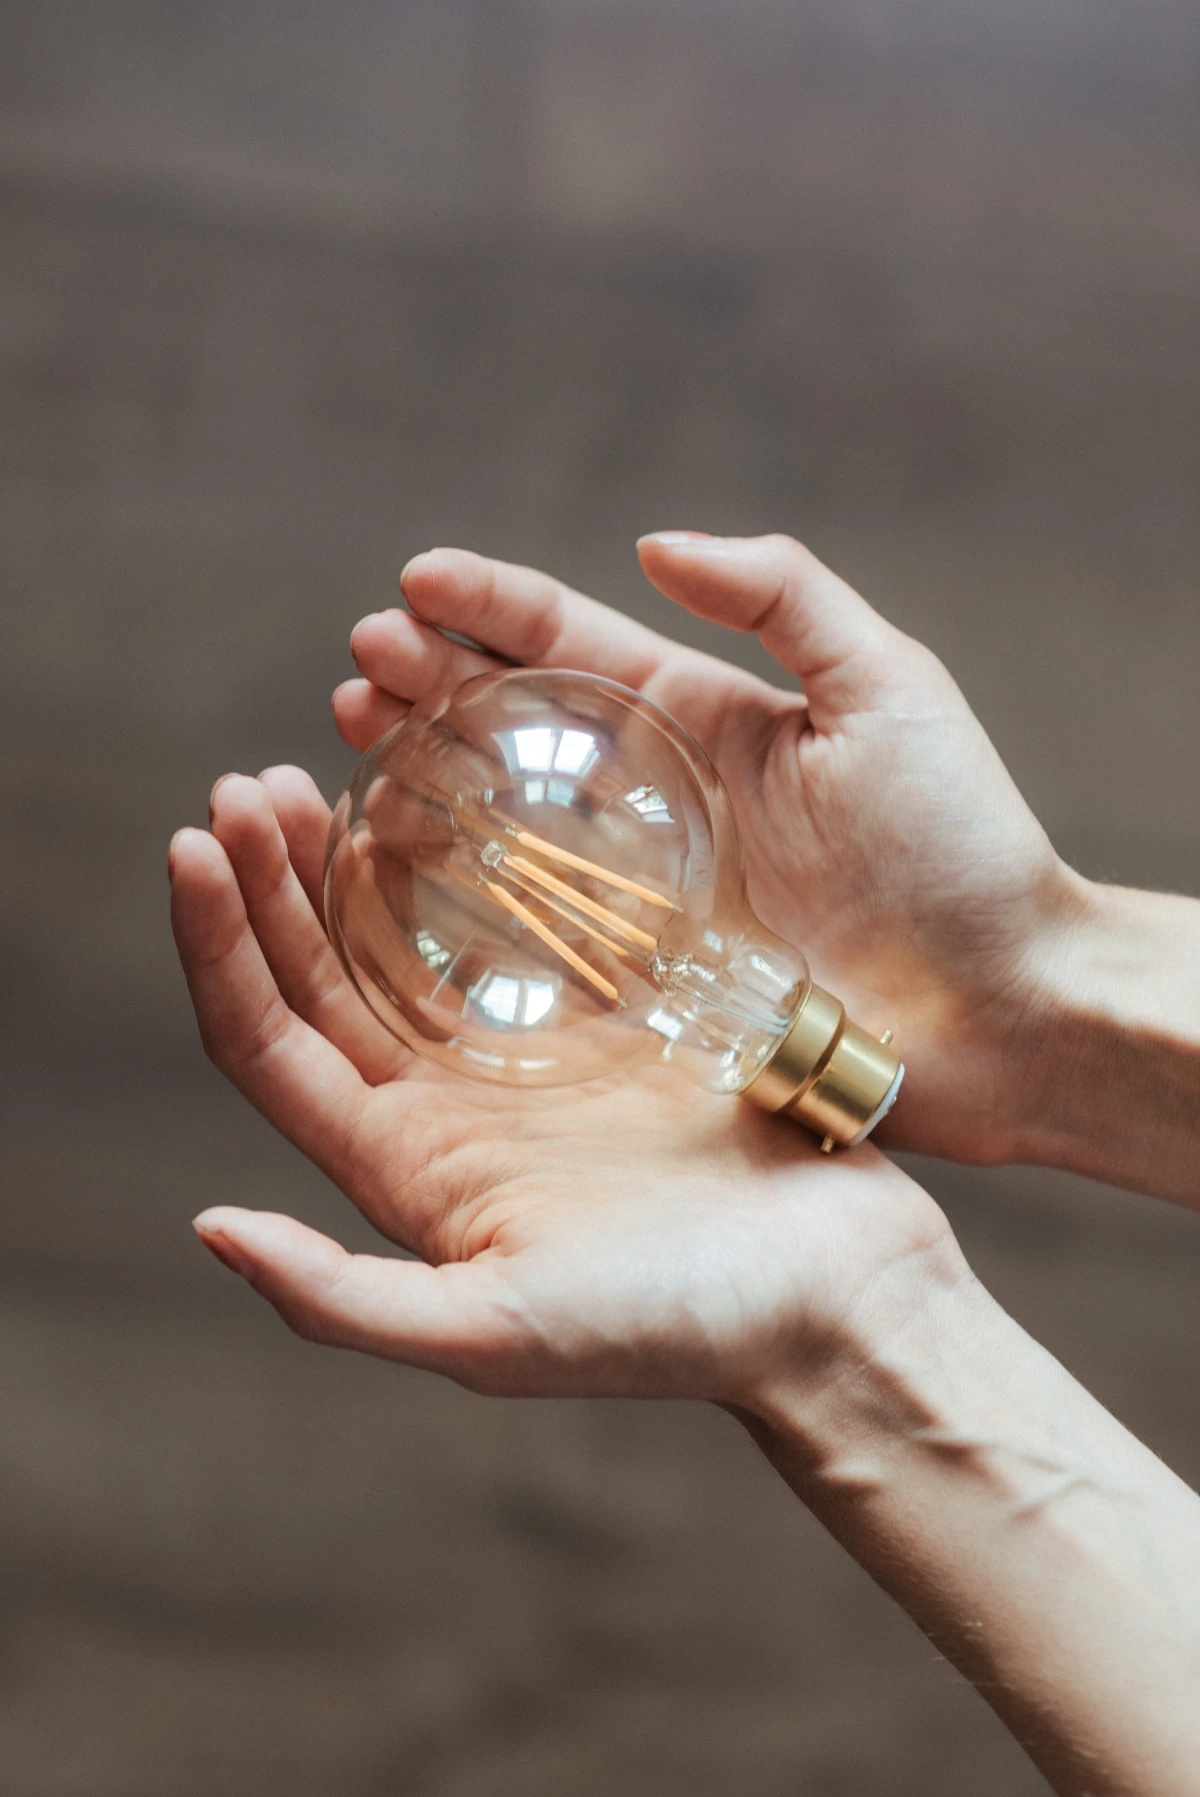 energy saving myths hands holding light bulb